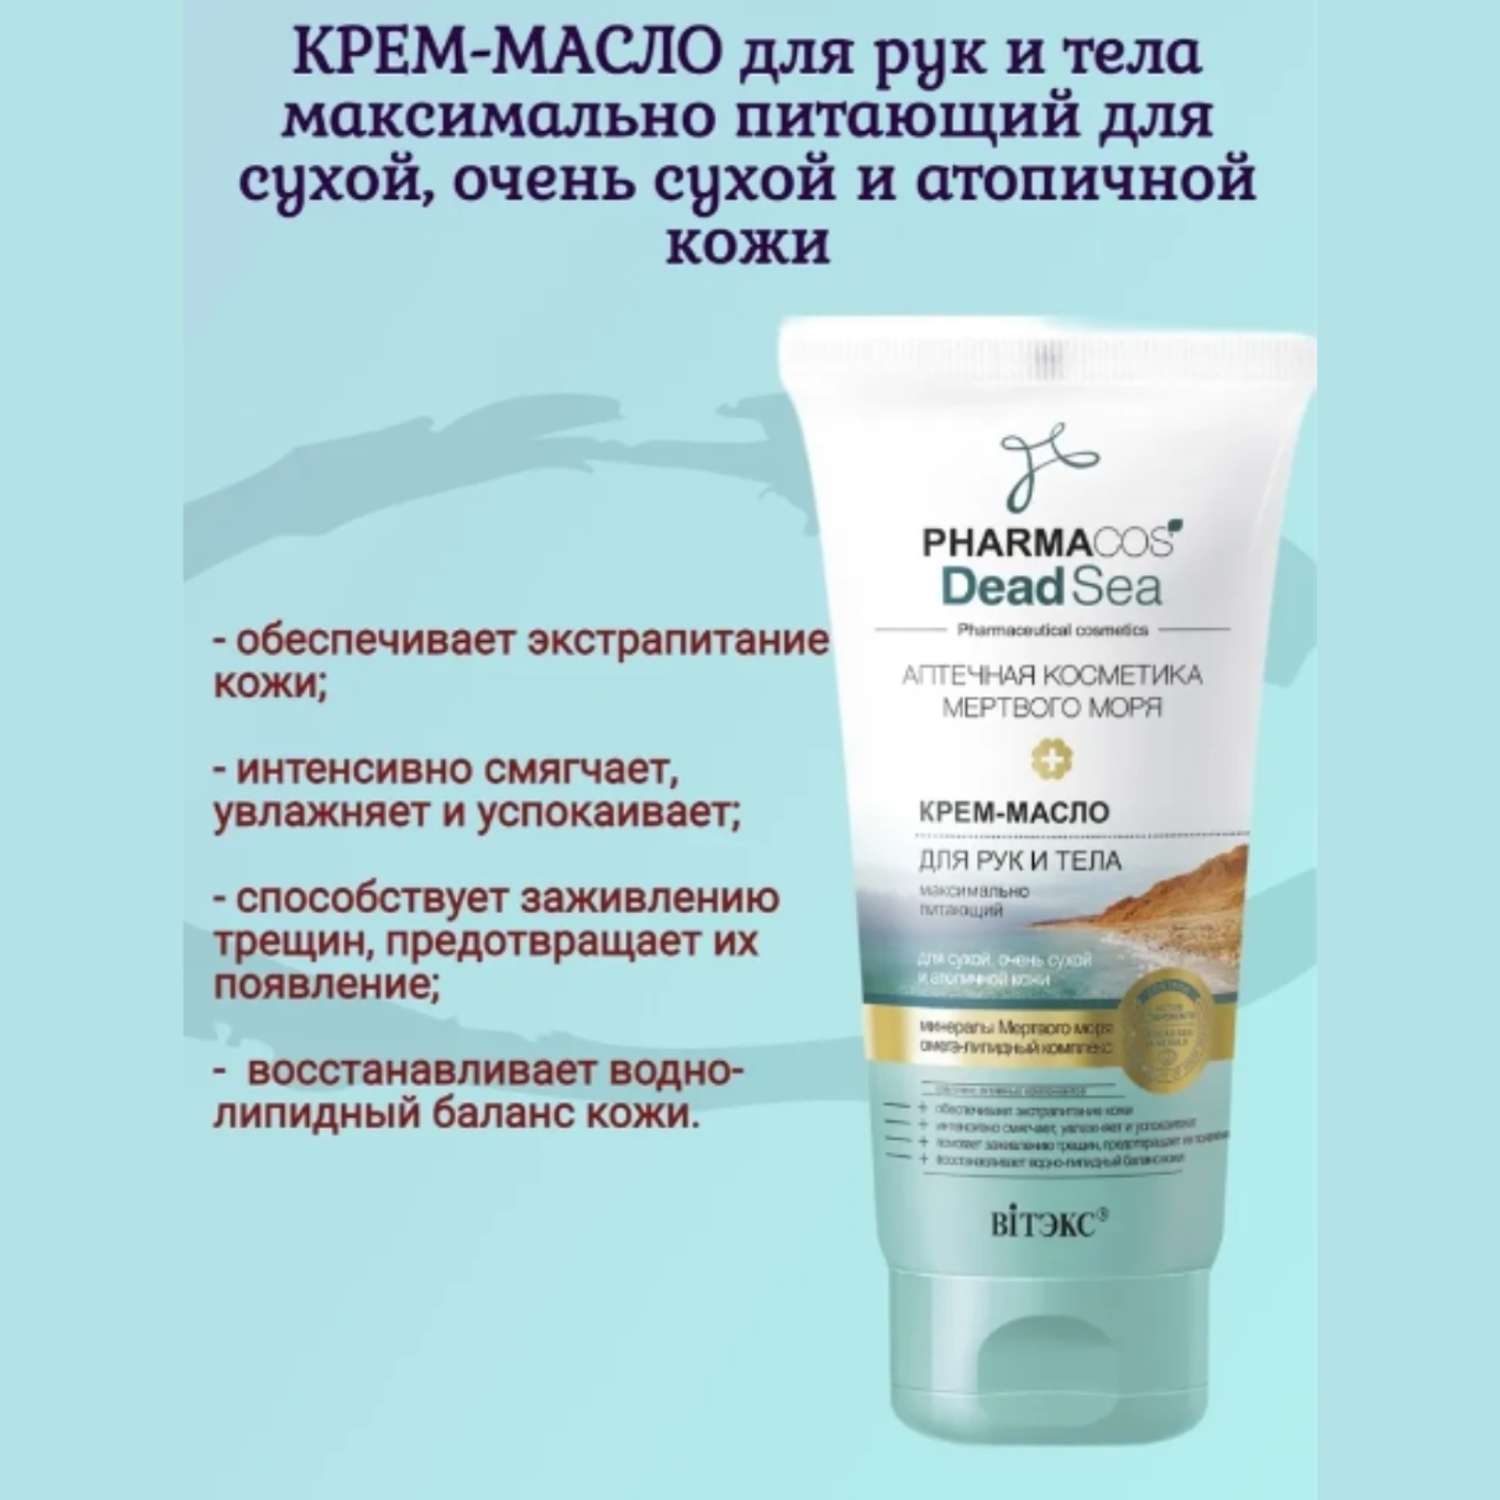 Крем для рук и тела ВИТЭКС Масло Pharmacos Dead Sea питающий для сухой кожи 150 мл - фото 2